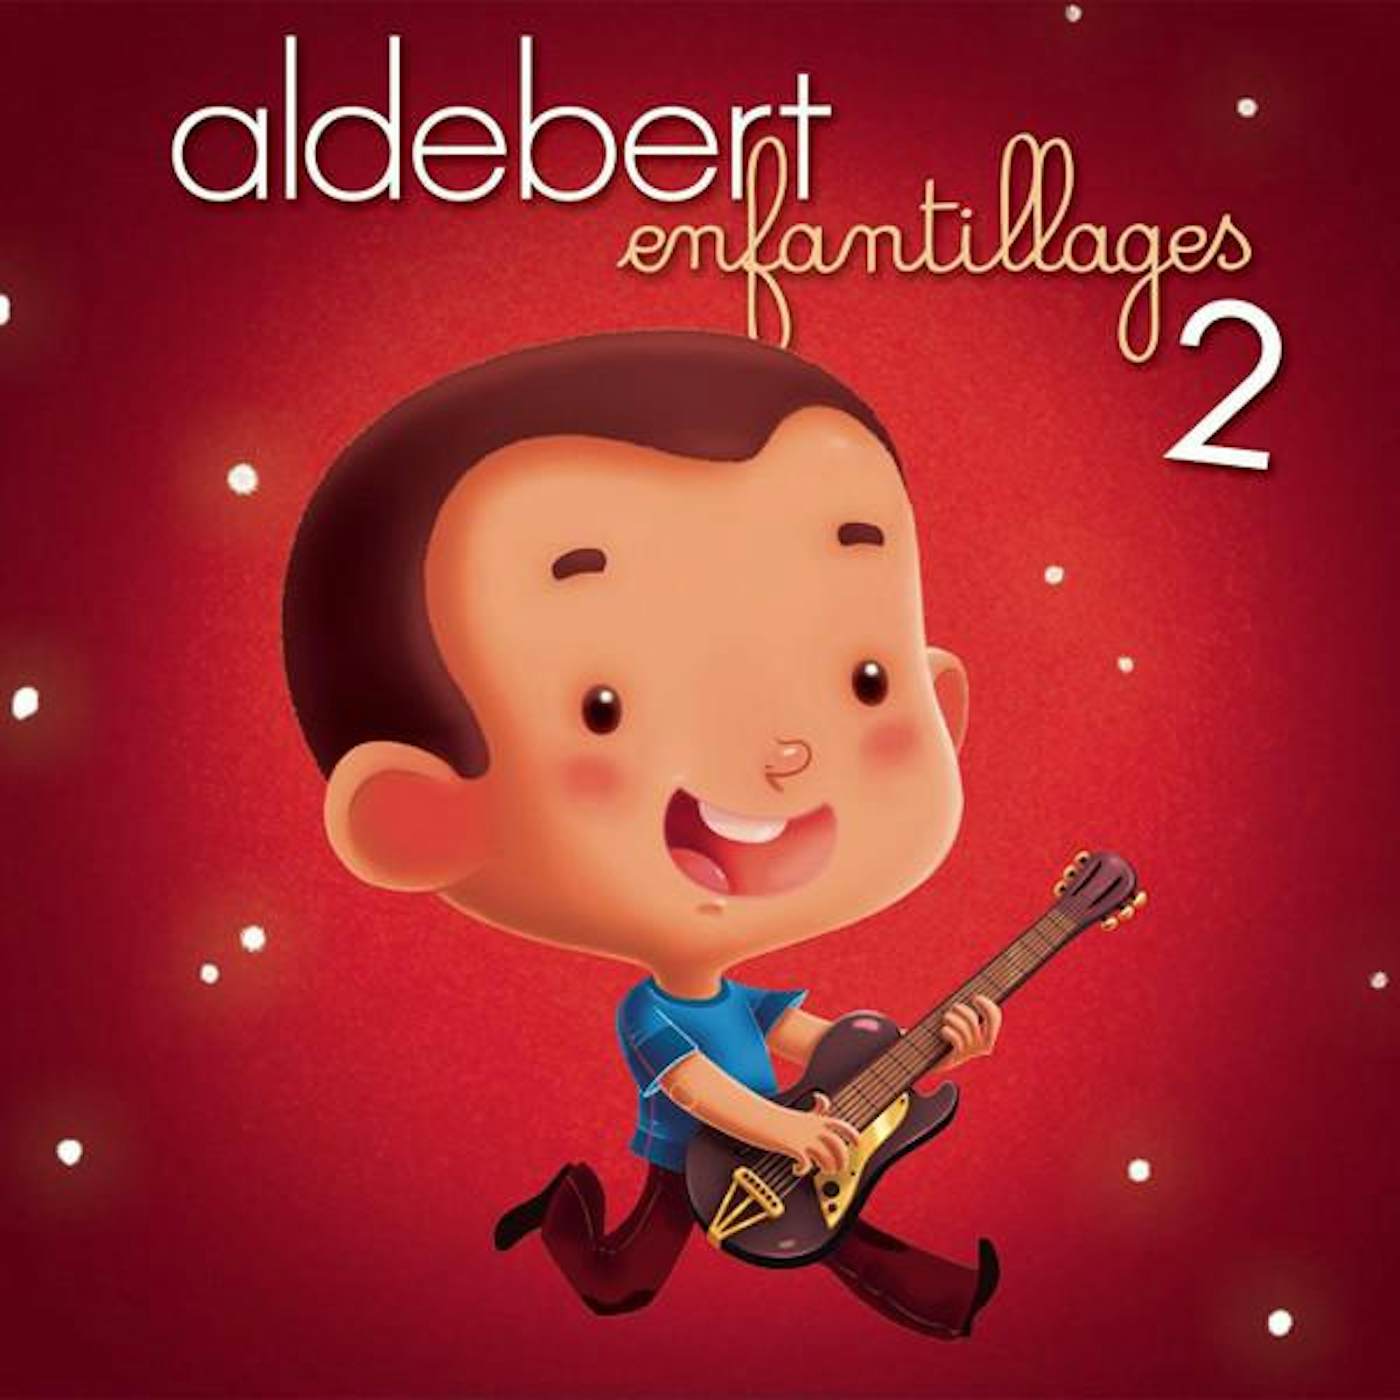 Aldebert ENFANTILLAGES 2 CD